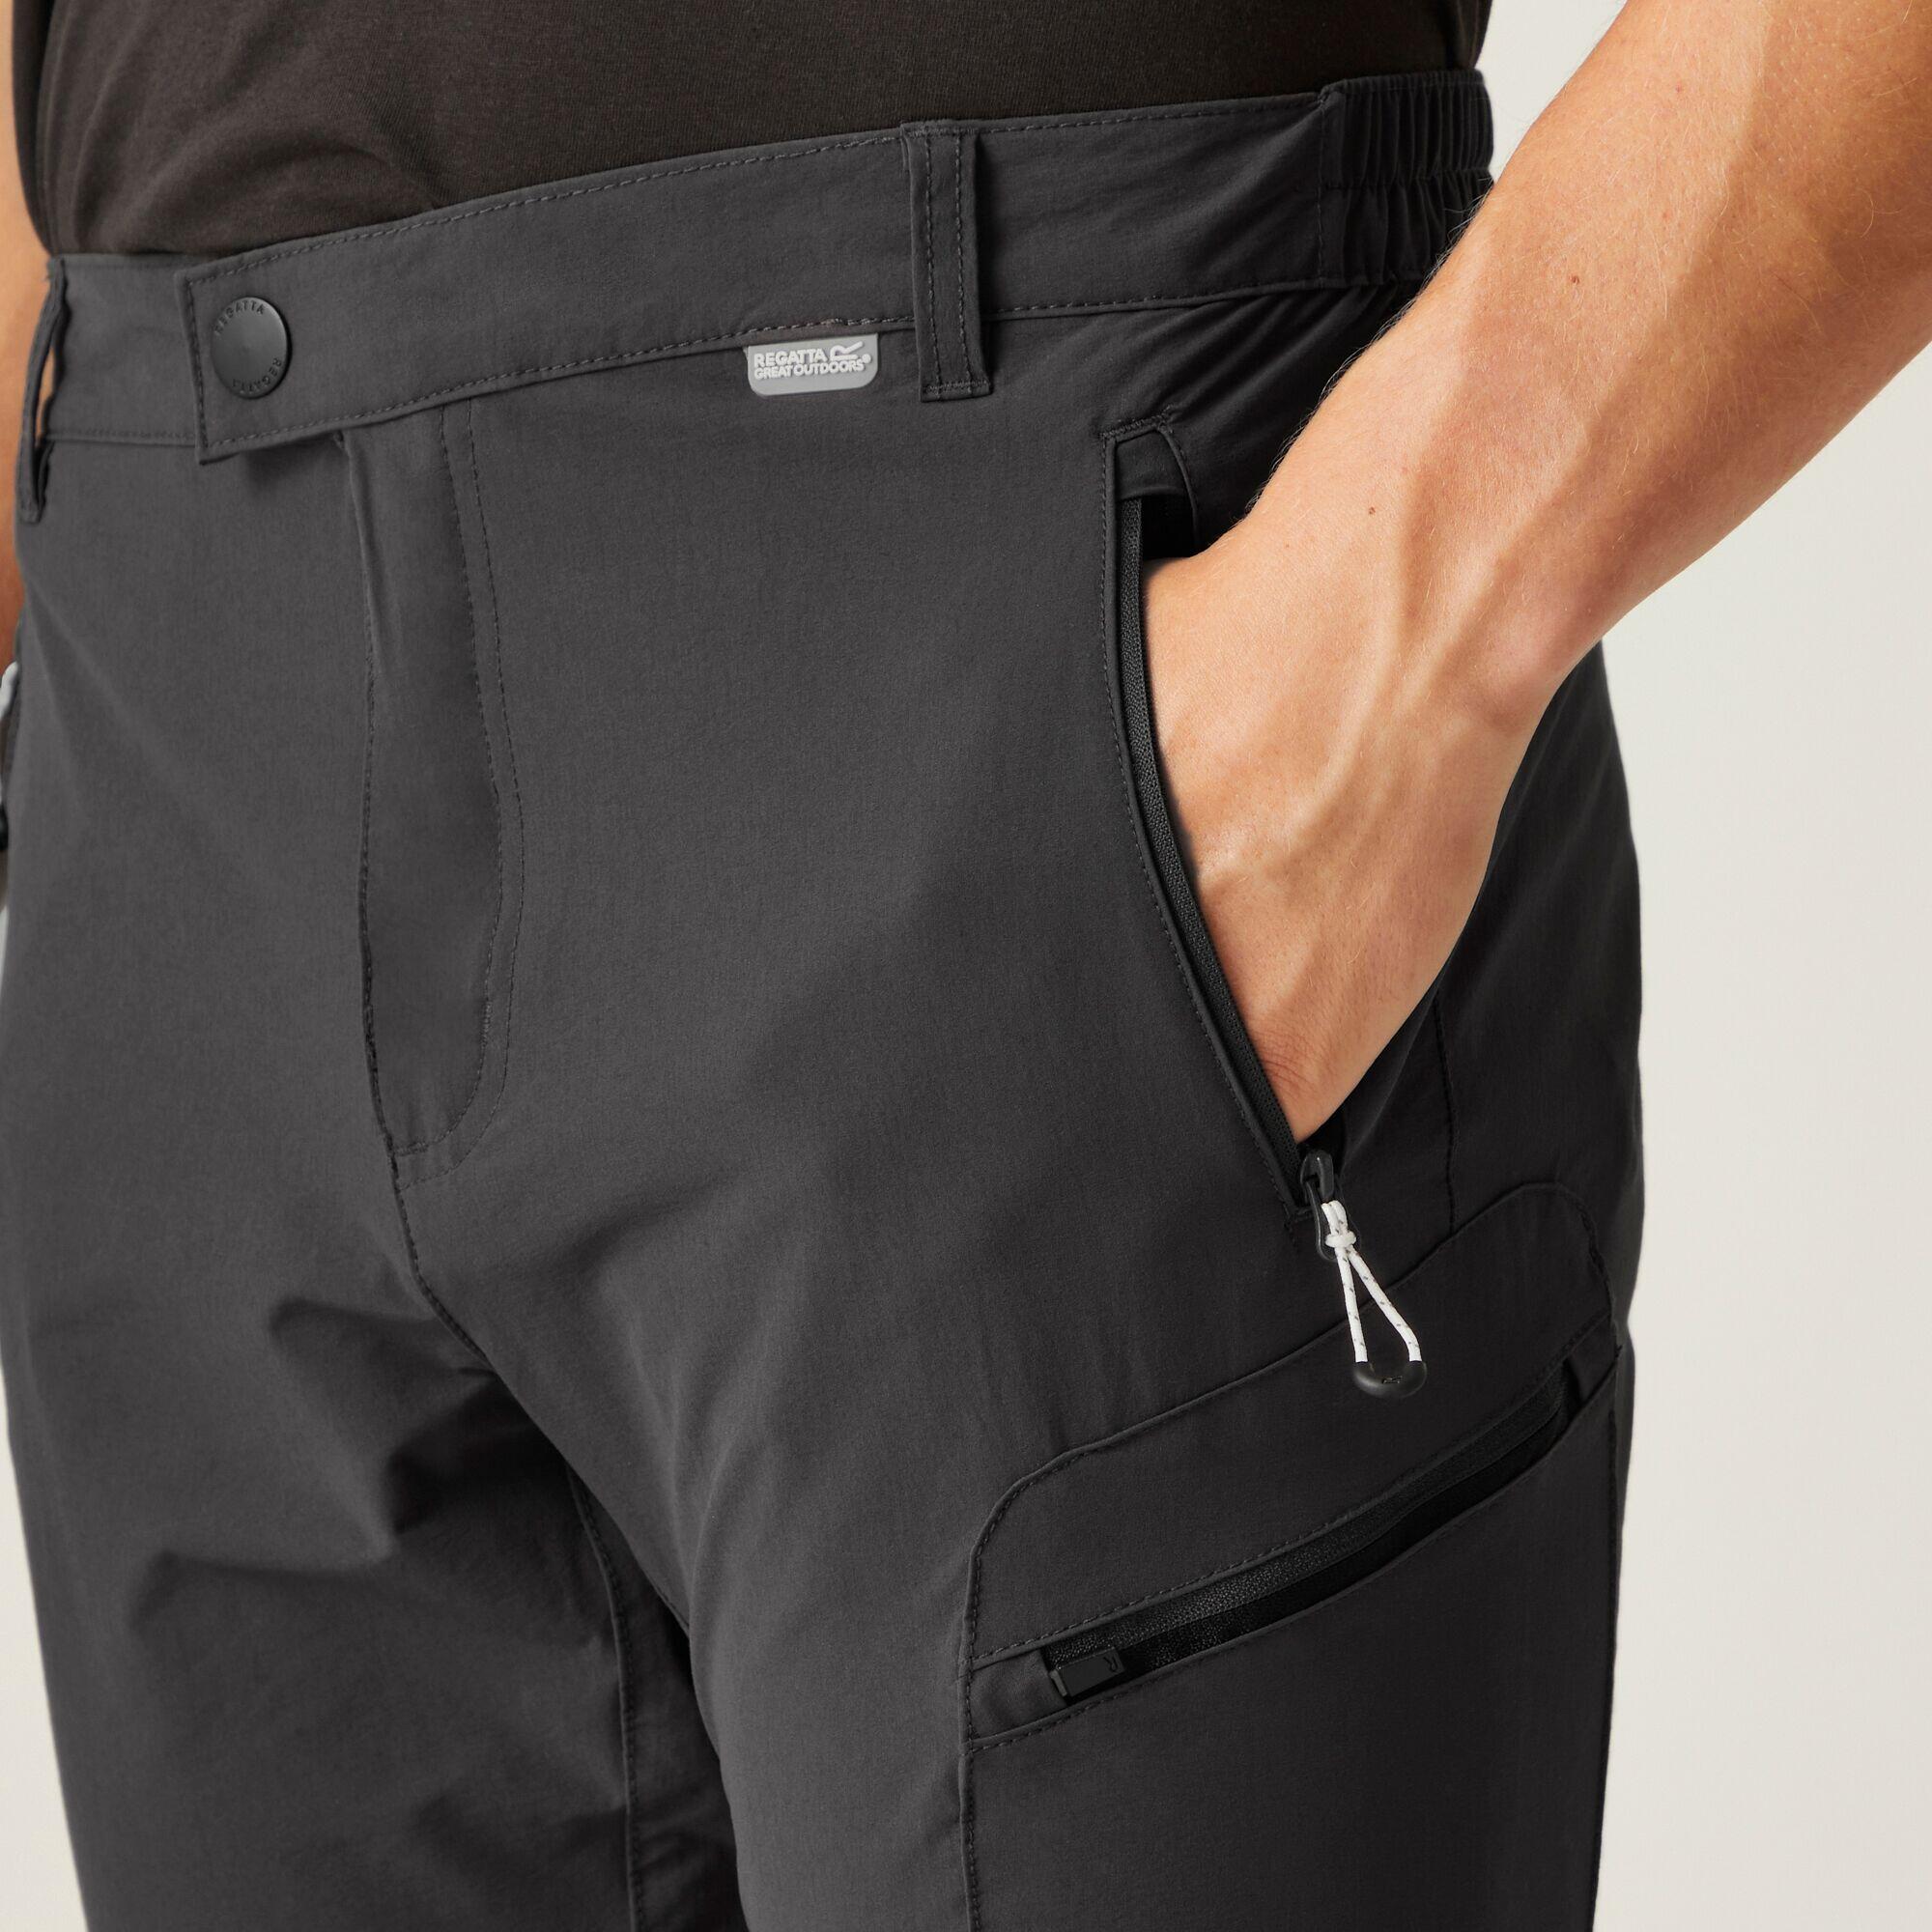 Men's Highton Zip Off Walking Trousers 4/5